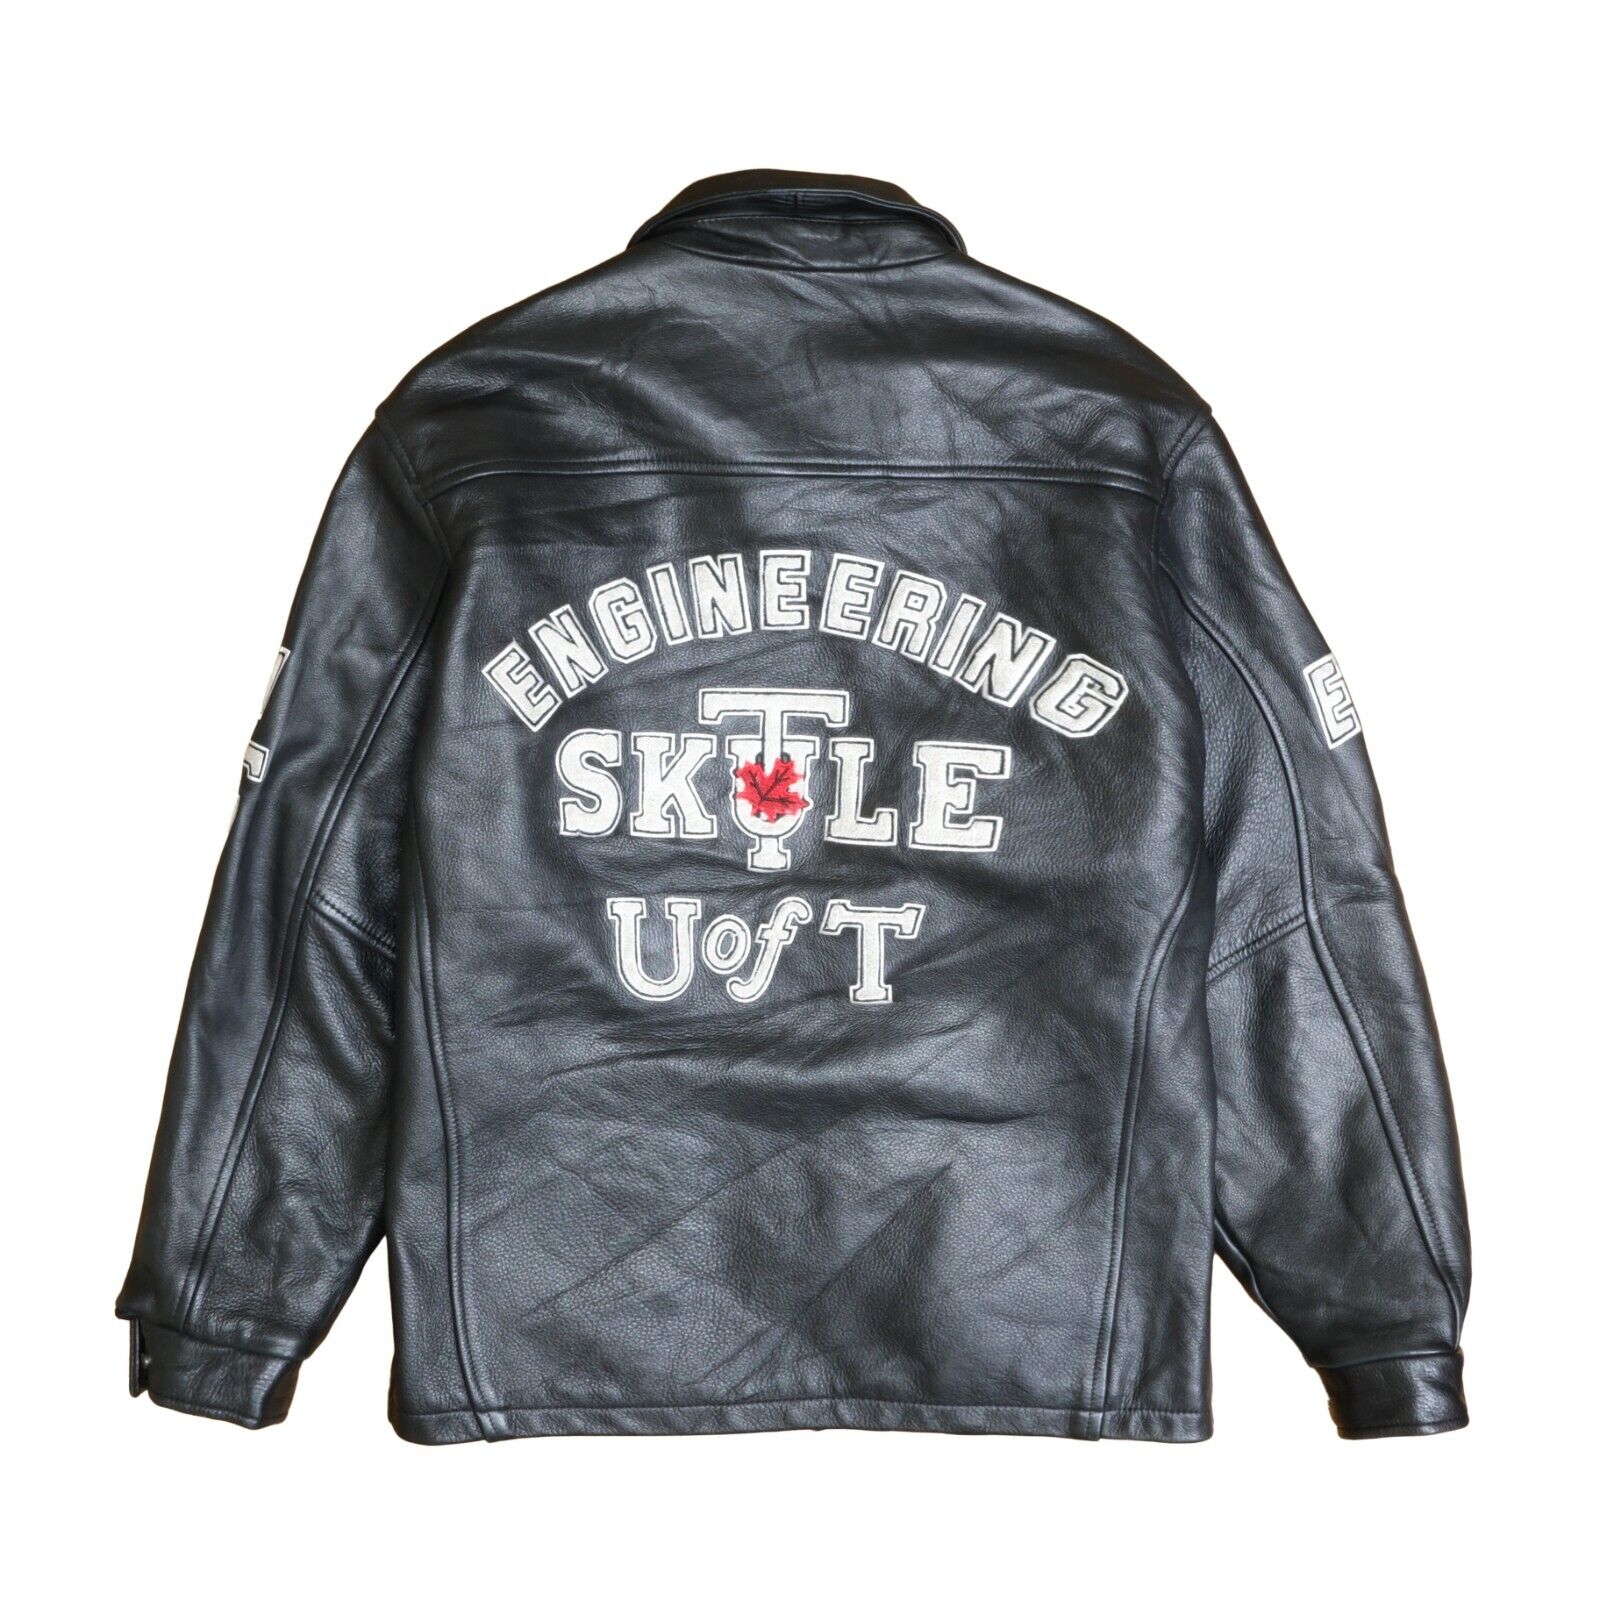 University of Toronto Engineering Crest Leather Varsity Jacket Size Medium  2007